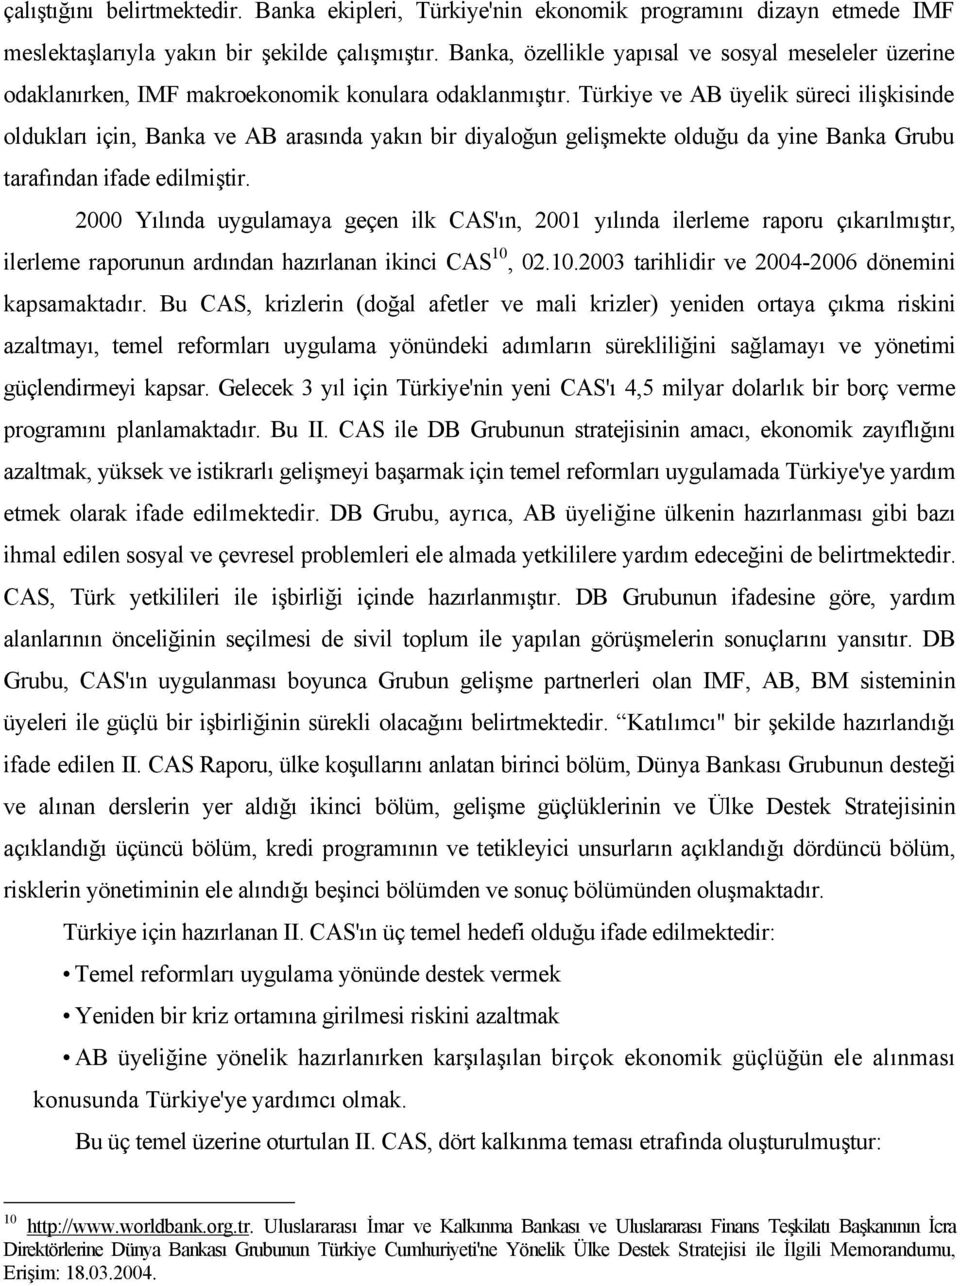 Türkiye ve AB üyelik süreci ilişkisinde oldukları için, Banka ve AB arasında yakın bir diyaloğun gelişmekte olduğu da yine Banka Grubu tarafından ifade edilmiştir.